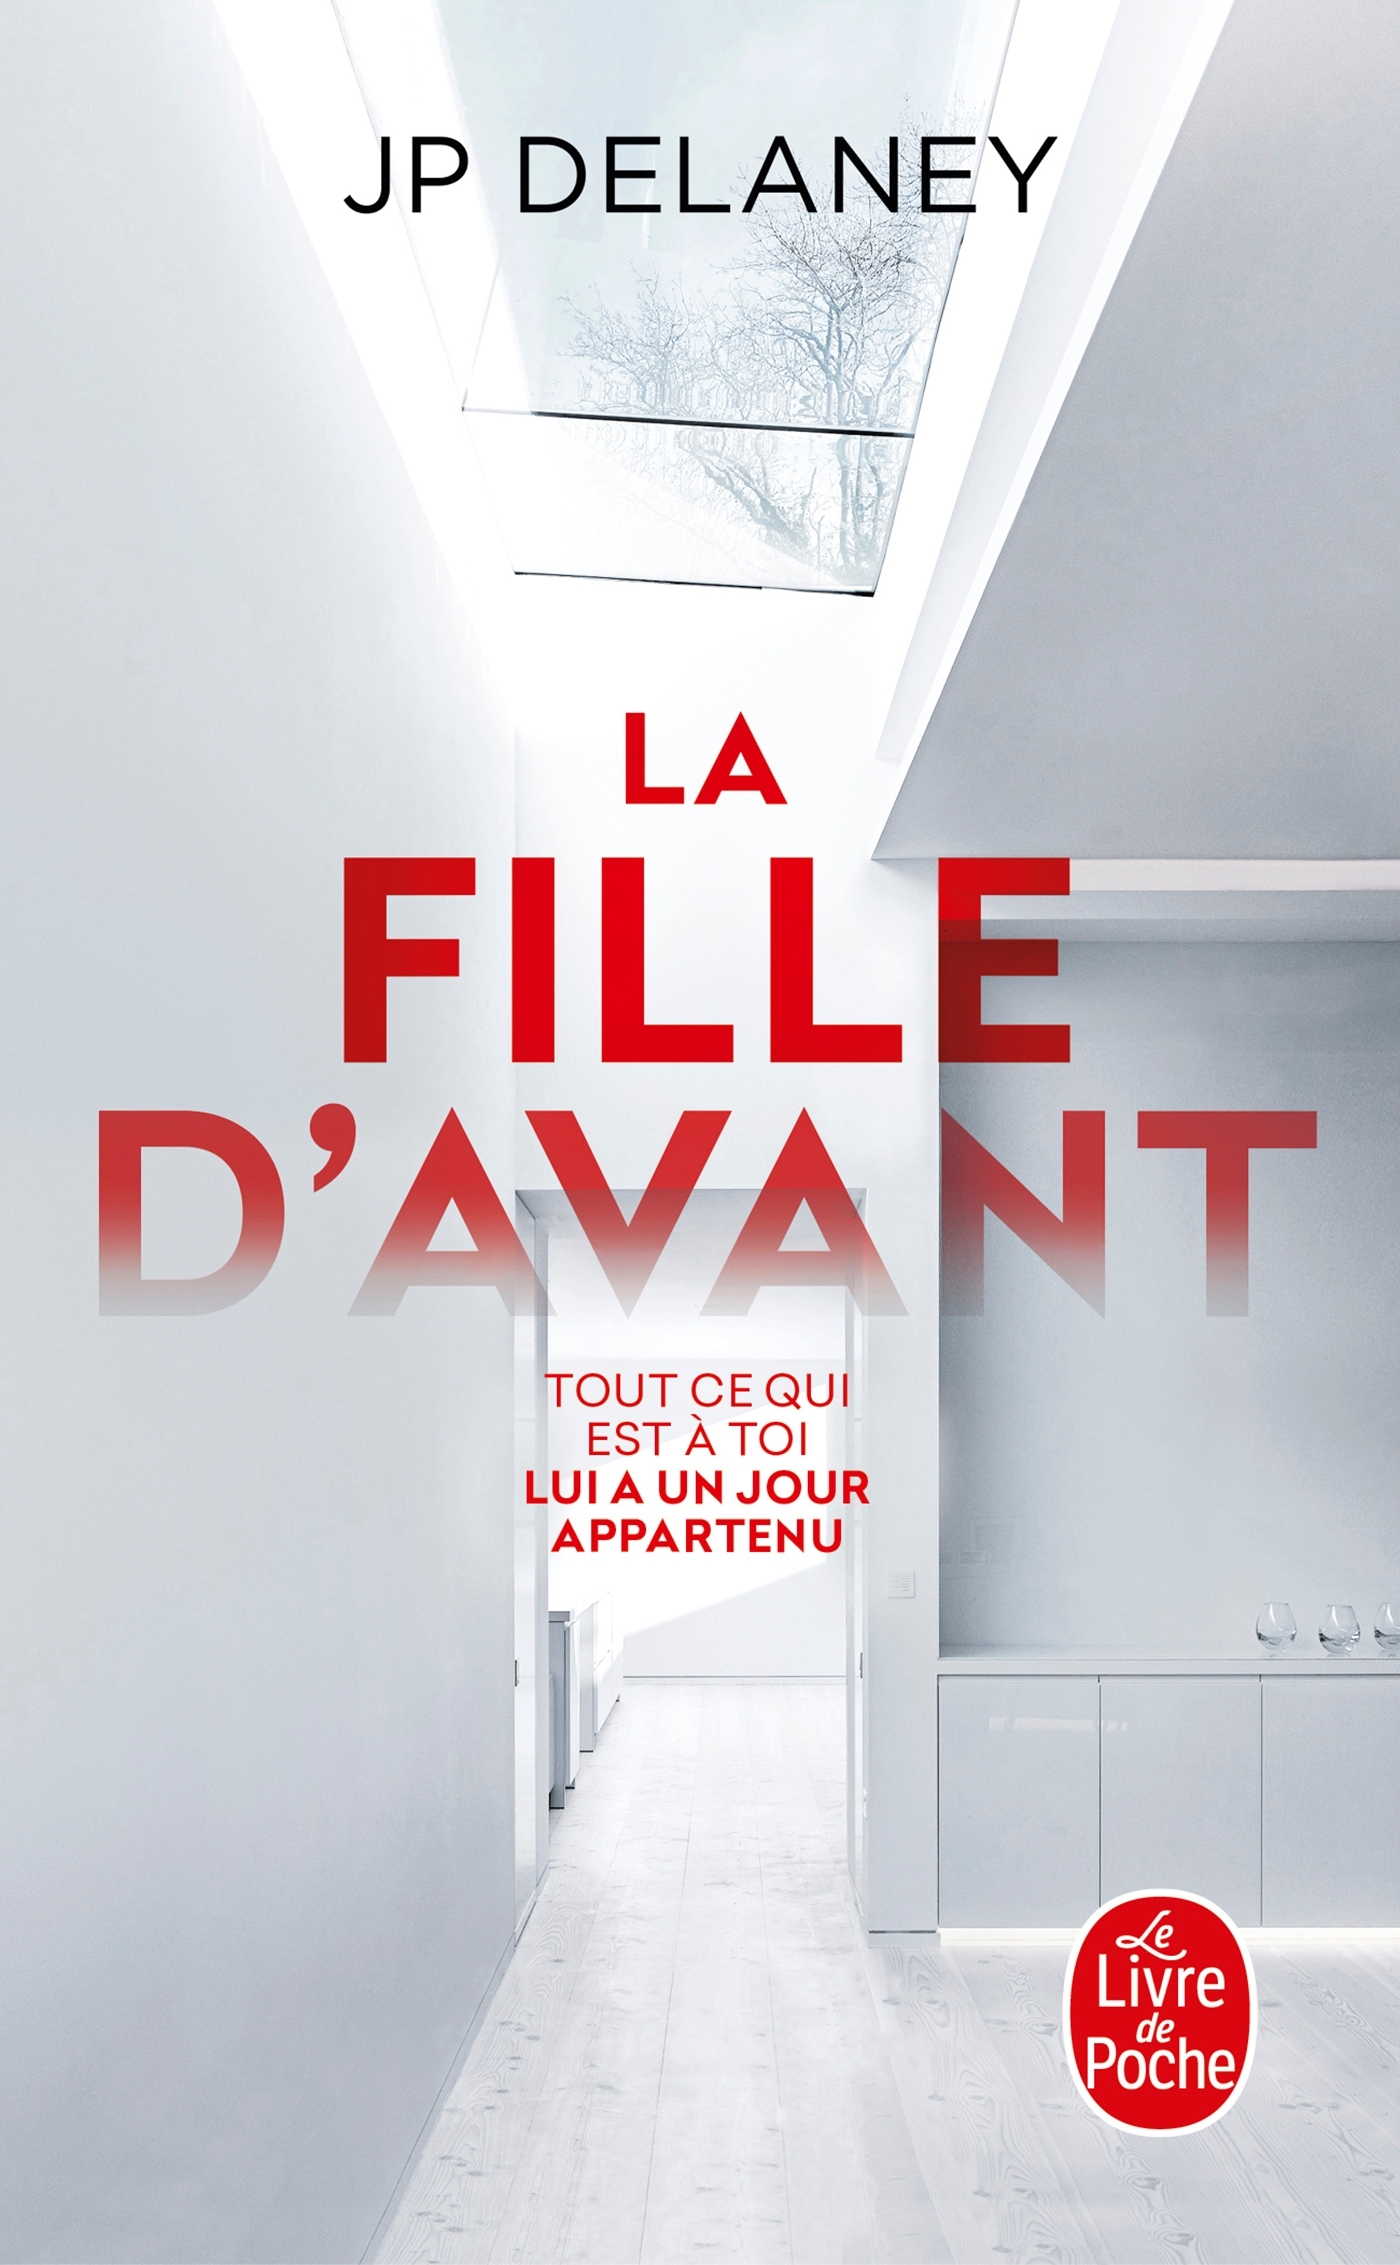 La Fille d'avant (9782253092568-front-cover)